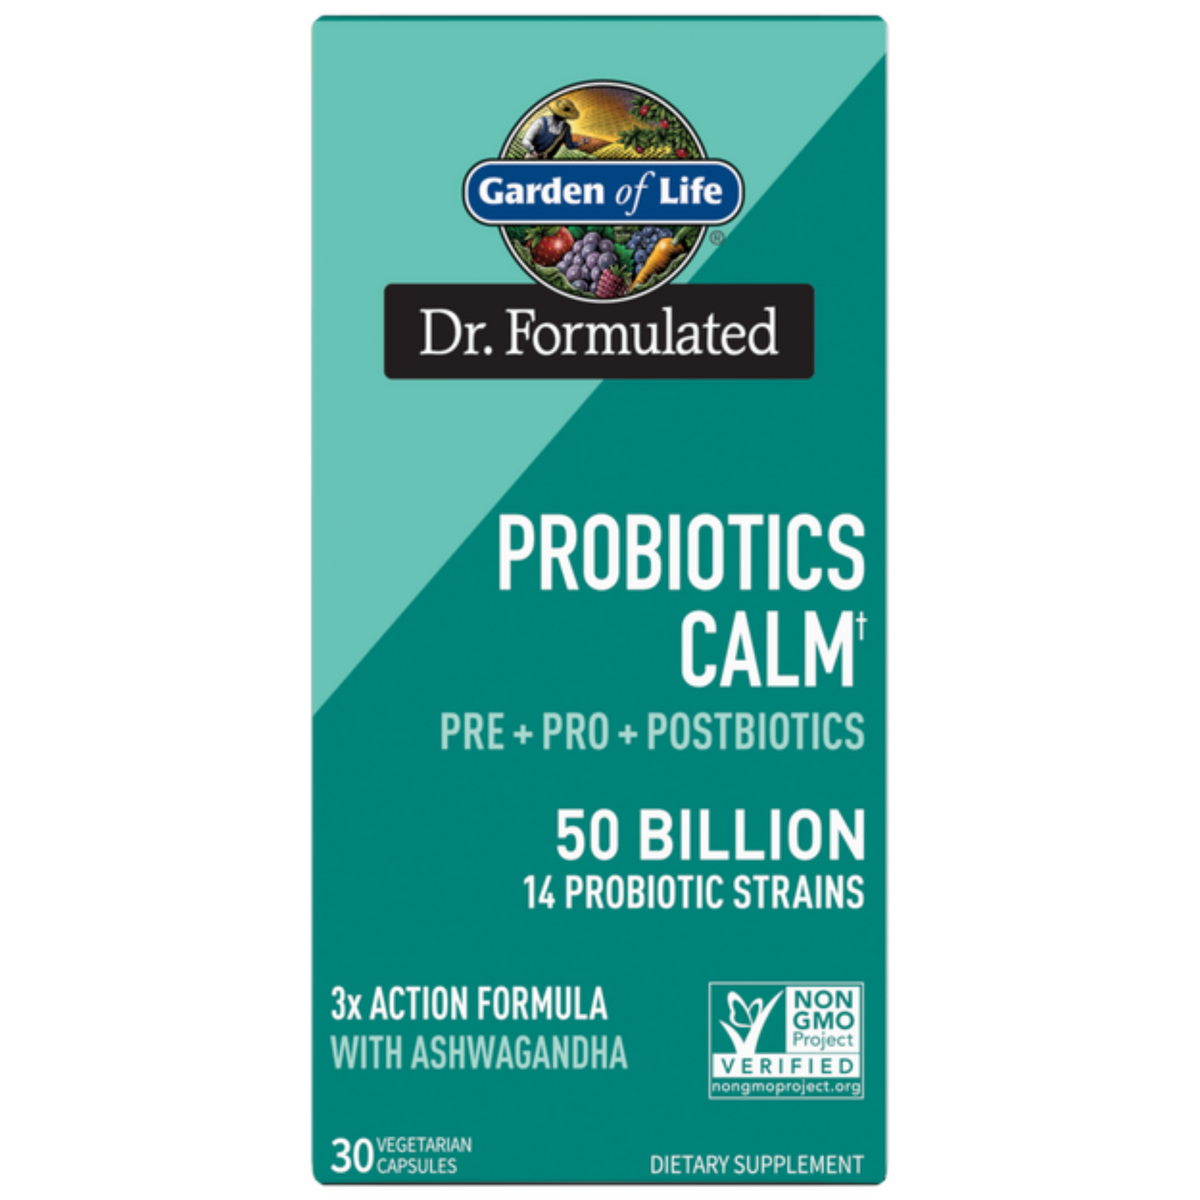 Primary Image of Probiotic Calm 50B Capsules